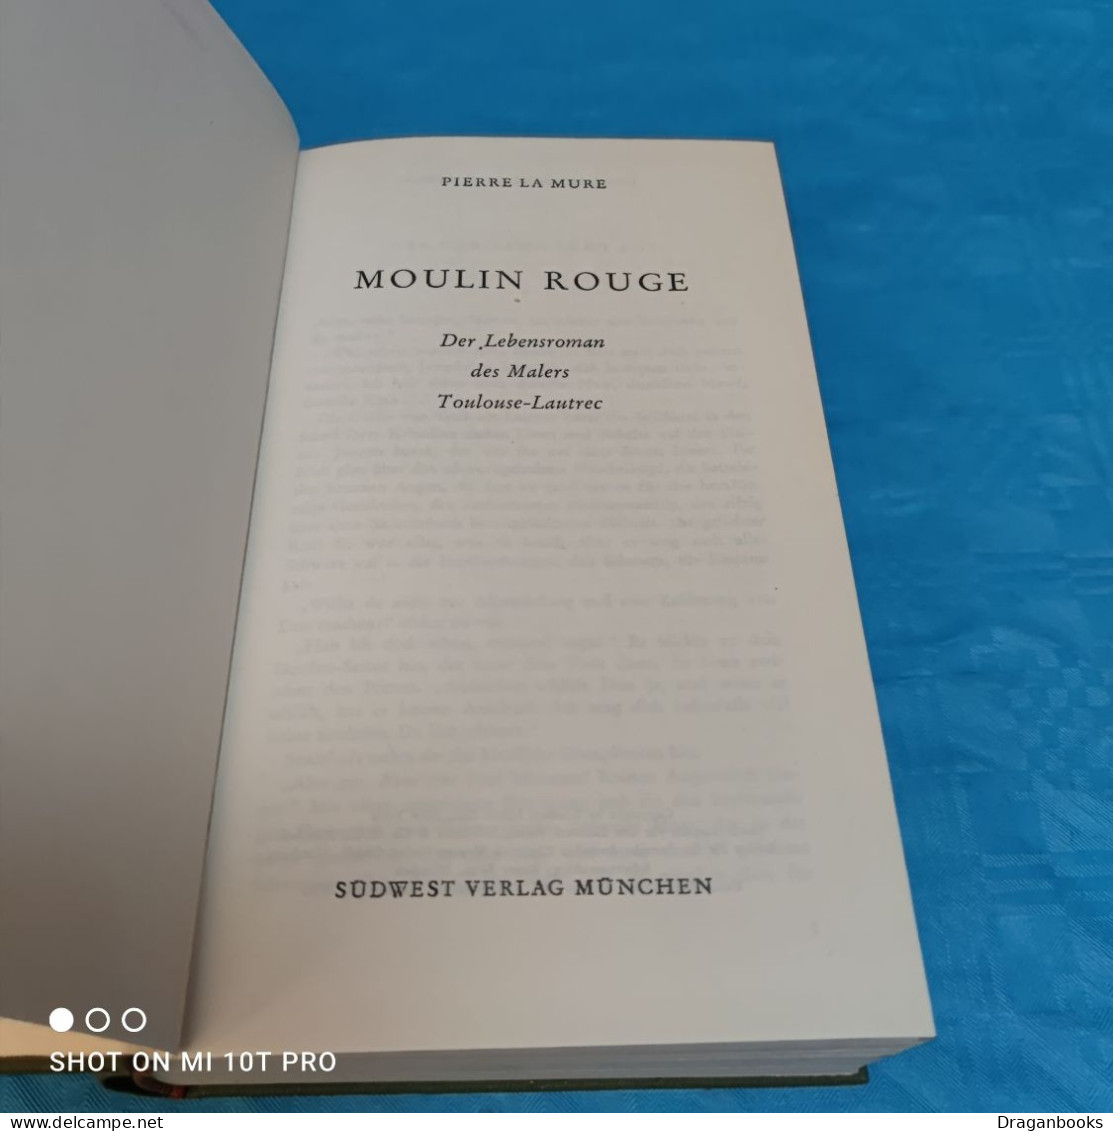 Pierre La Mure - Moulin Rouge - Biografía & Memorias